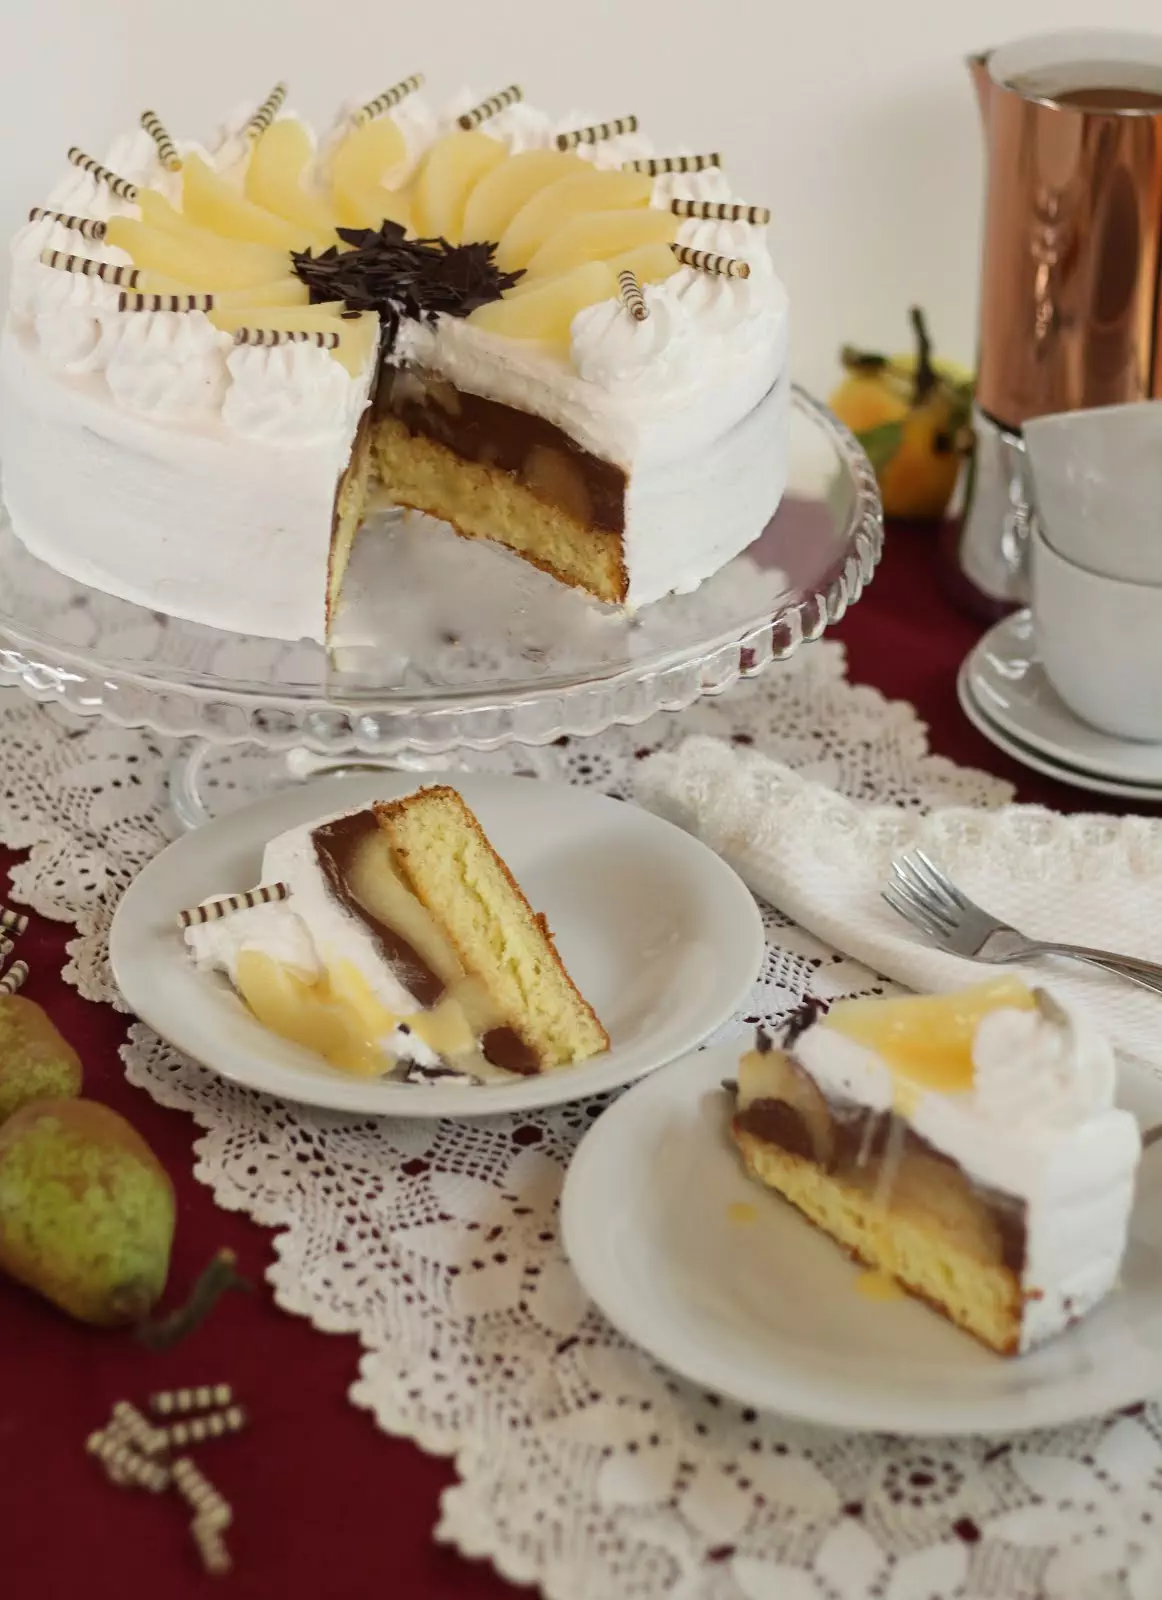 Traumhafte Birne-Helene-Torte | Torte mit Birnen und Schokolade | Rezept und Video von Sugarprincess